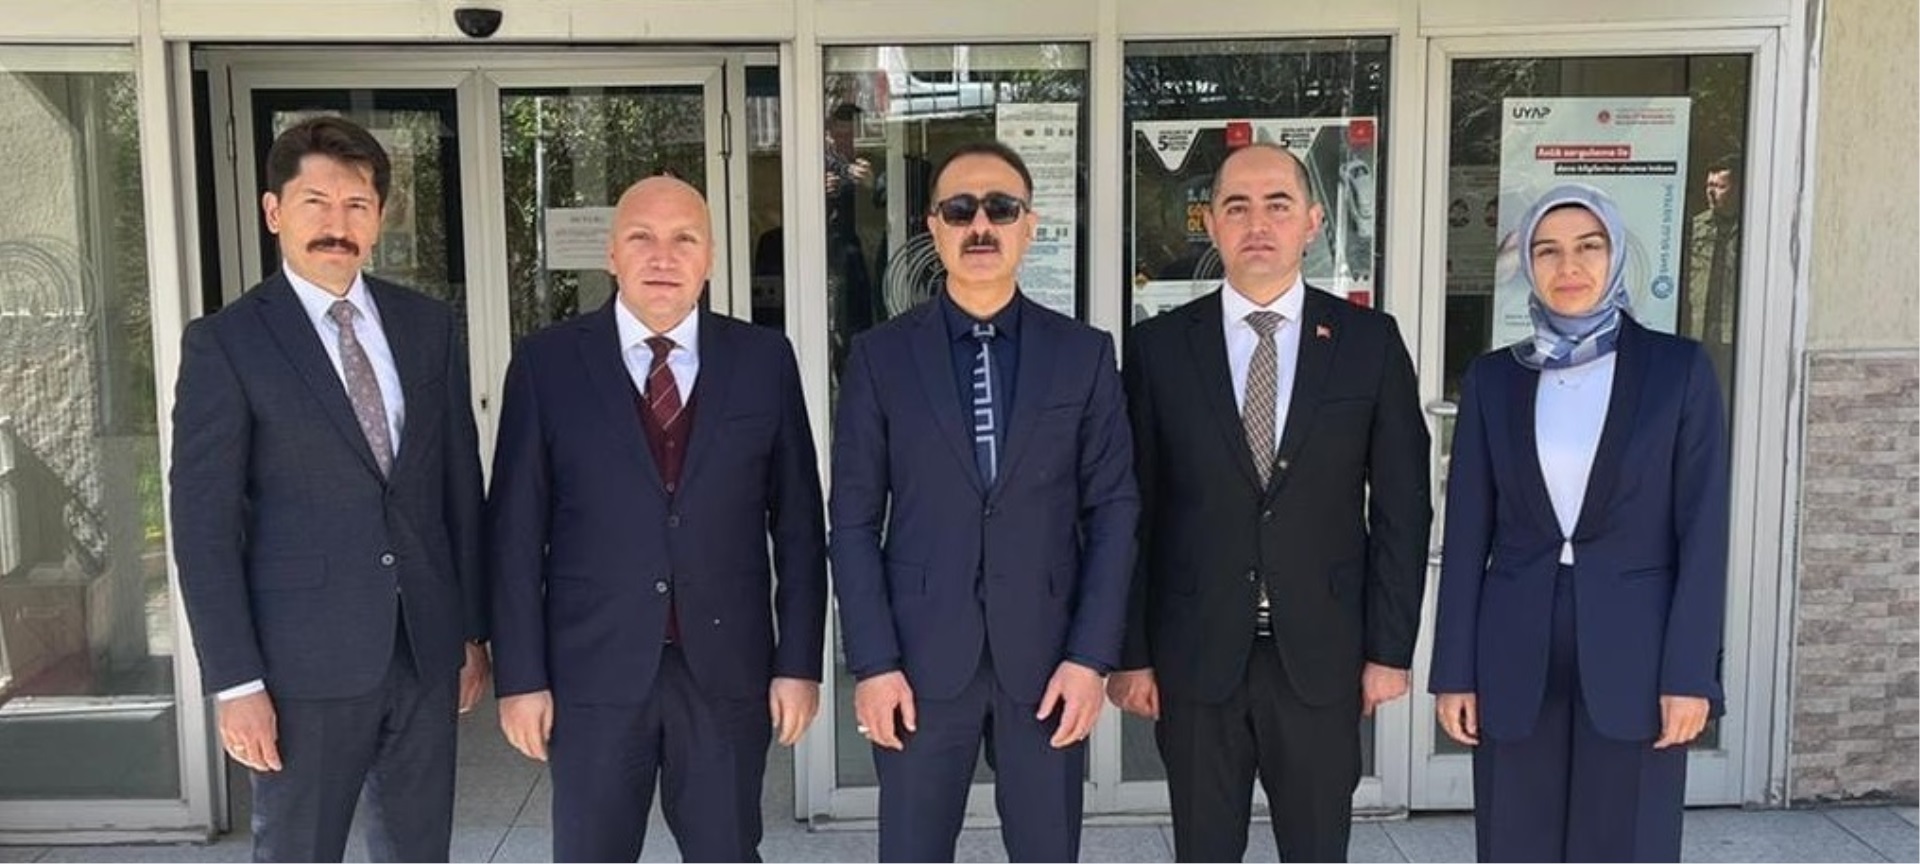 Erzurum Cumhuriyet Başsavcısı Hüseyin TUNCEL, Adalet Komisyonu Başkanı Osman Nuri NAYMAN ve 4. Ağır Ceza Mahkemesi Başkanı Yakup TAŞLIOVA adliyemizi ziyaret etti.